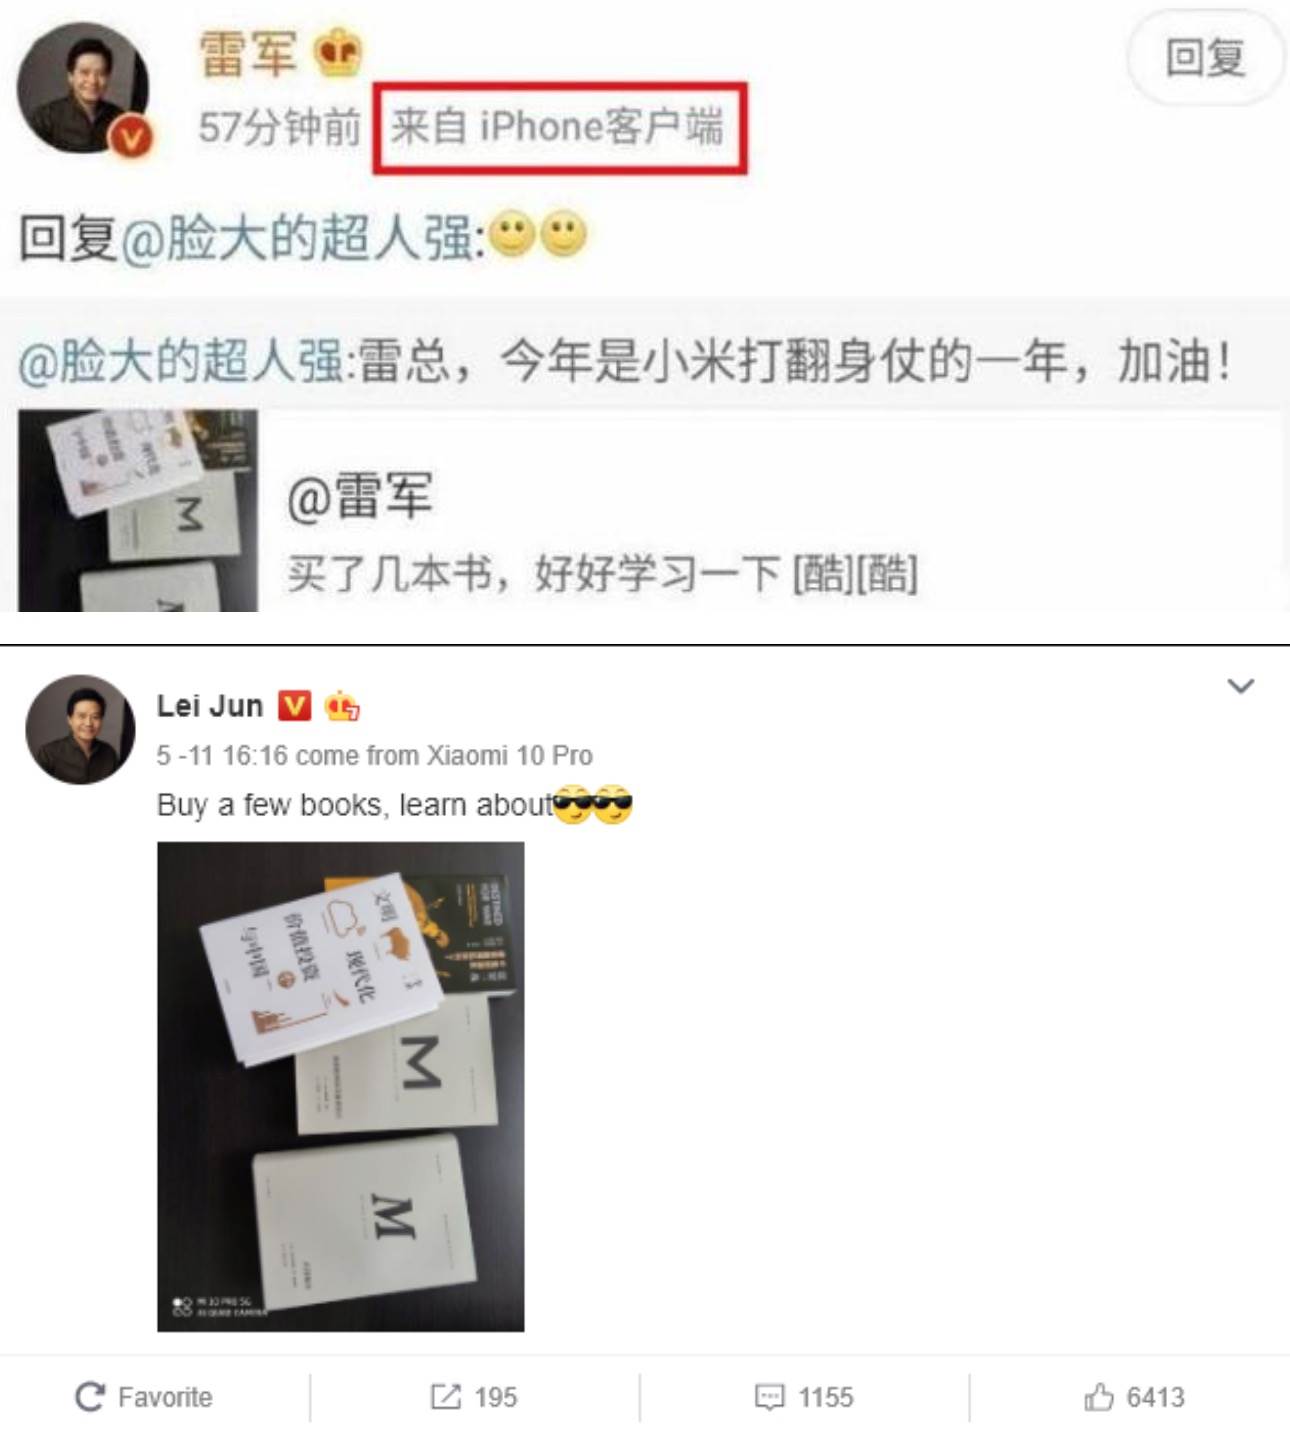 Wpadka szefa Xiaomi w chińskiej sieci społecznościowej Weibo polecane, ciekawostki Xiaomi, Wibo, Weibo  Prezes Xiaomi, Lei Jun, udostępnił w chińskiej sieci społecznościowej Weibo, zdjęcie książek, które zaleca przeczytać. Niby nic w tym dziwnego z jednym małym wyjątkiem?
 CleanShot 2020 05 13 at 14.55.43@2x